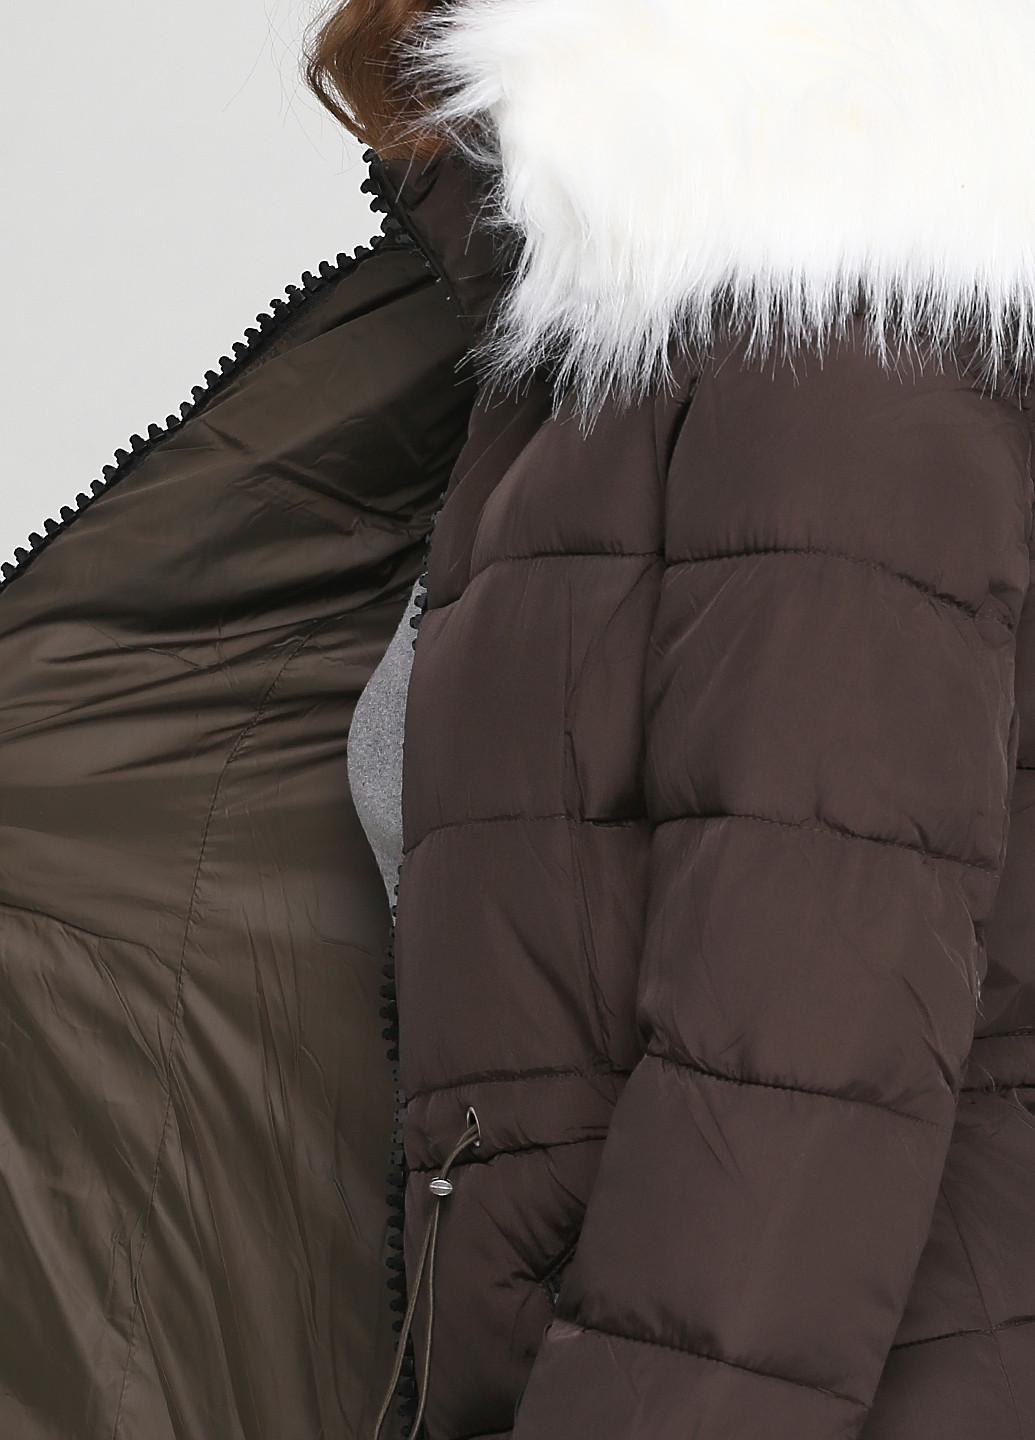 Оливковая (хаки) зимняя куртка Monte Cervino